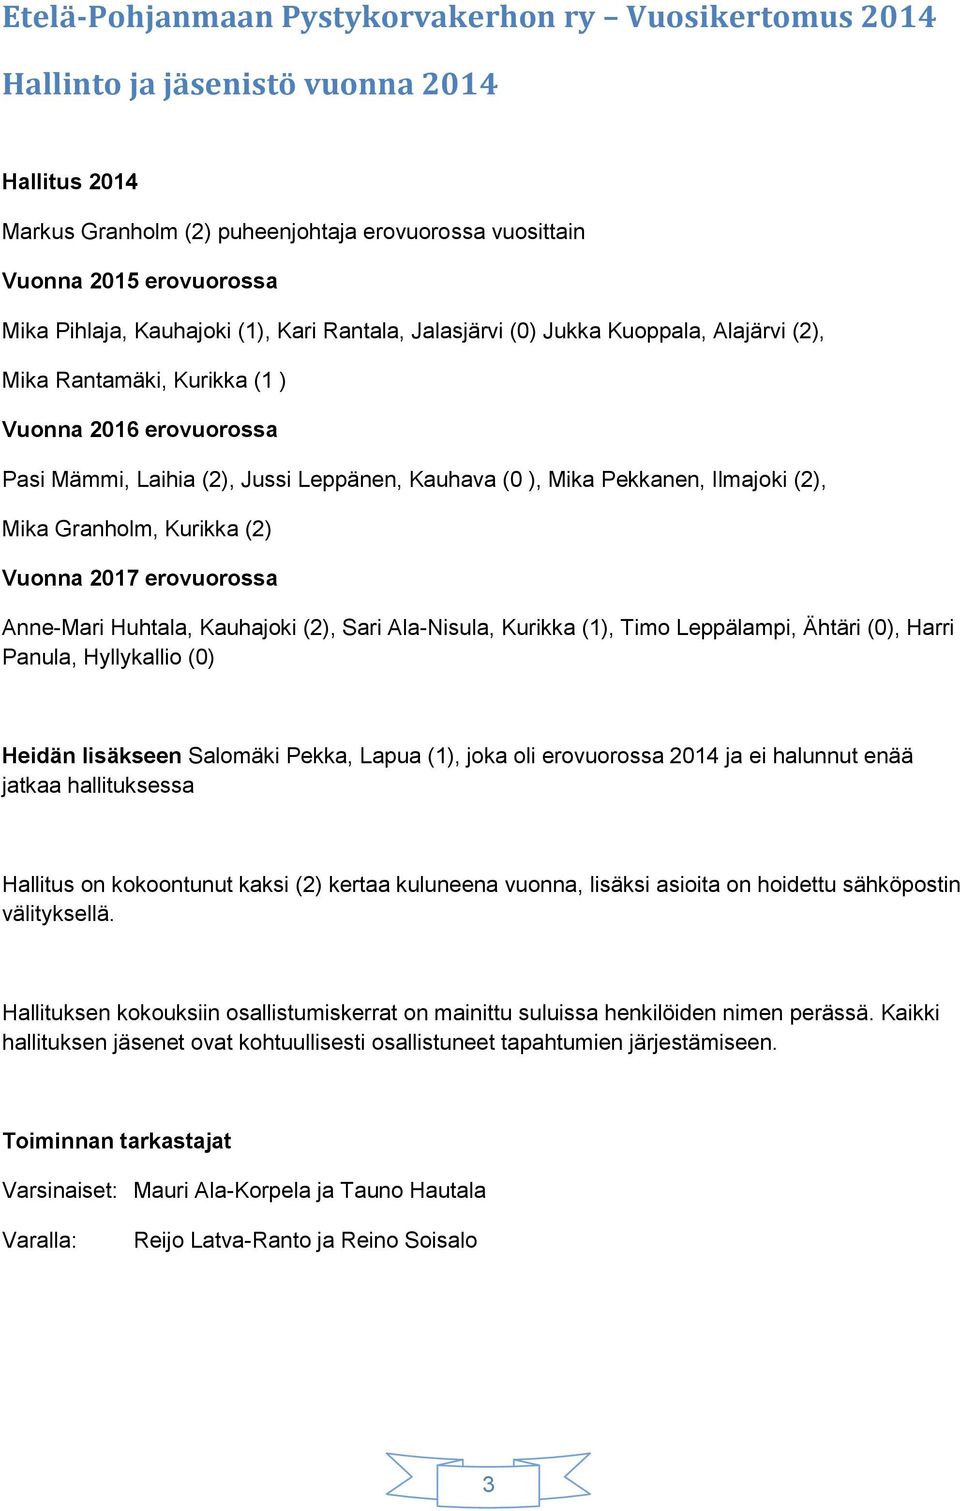 Ilmajoki (2), Mika Granholm, Kurikka (2) Vuonna 2017 erovuorossa Anne-Mari Huhtala, Kauhajoki (2), Sari Ala-Nisula, Kurikka (1), Timo Leppälampi, Ähtäri (0), Harri Panula, Hyllykallio (0) Heidän